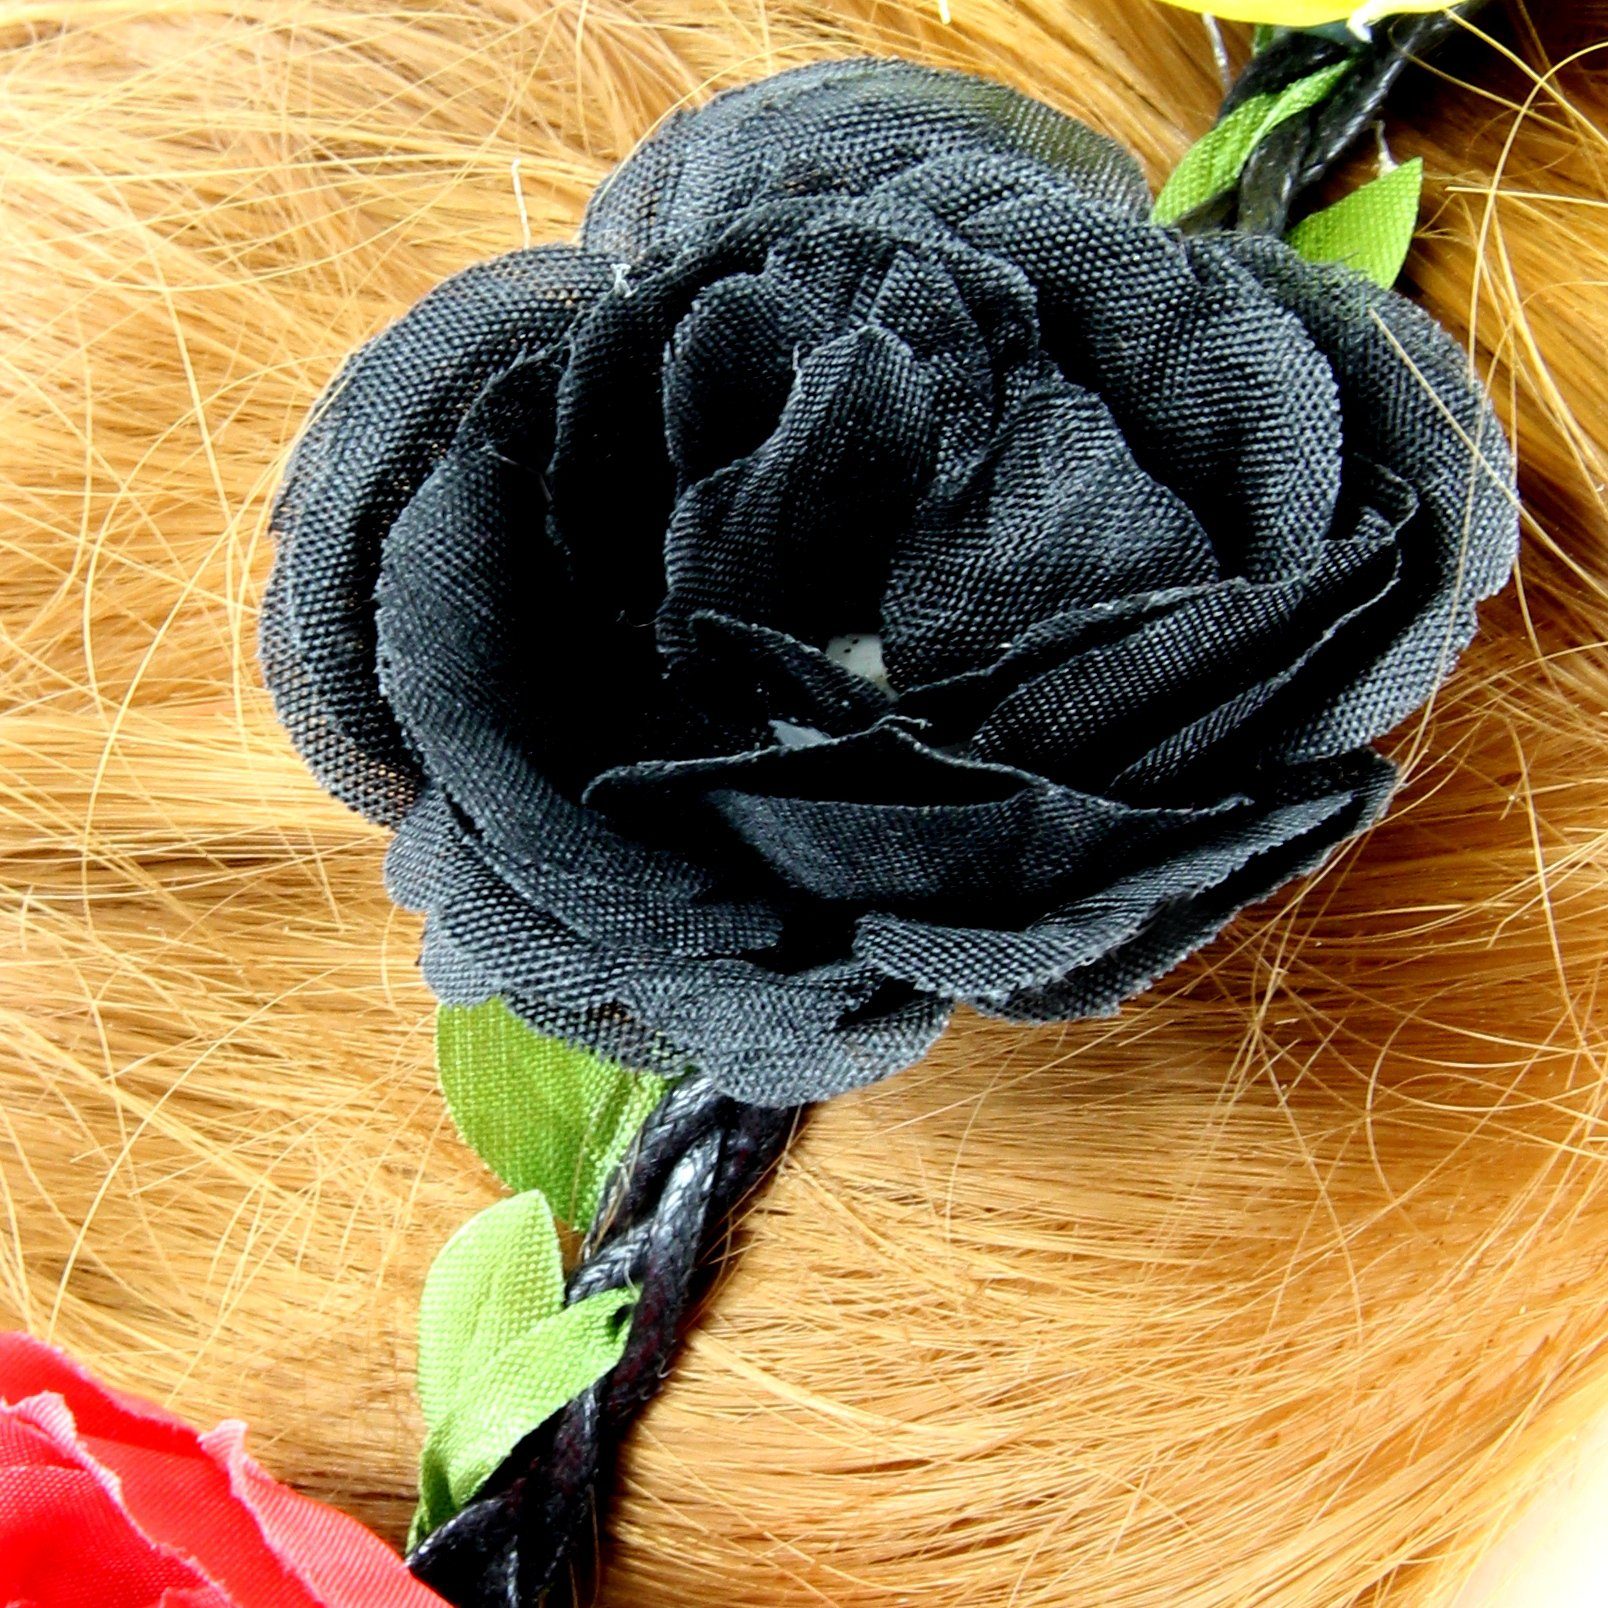 ZADAWERK Haarband Deutschland - und gelb Fan-Accessoire, Haarschmuck, rot schwarz, Blumen in 1-tlg., Belgien